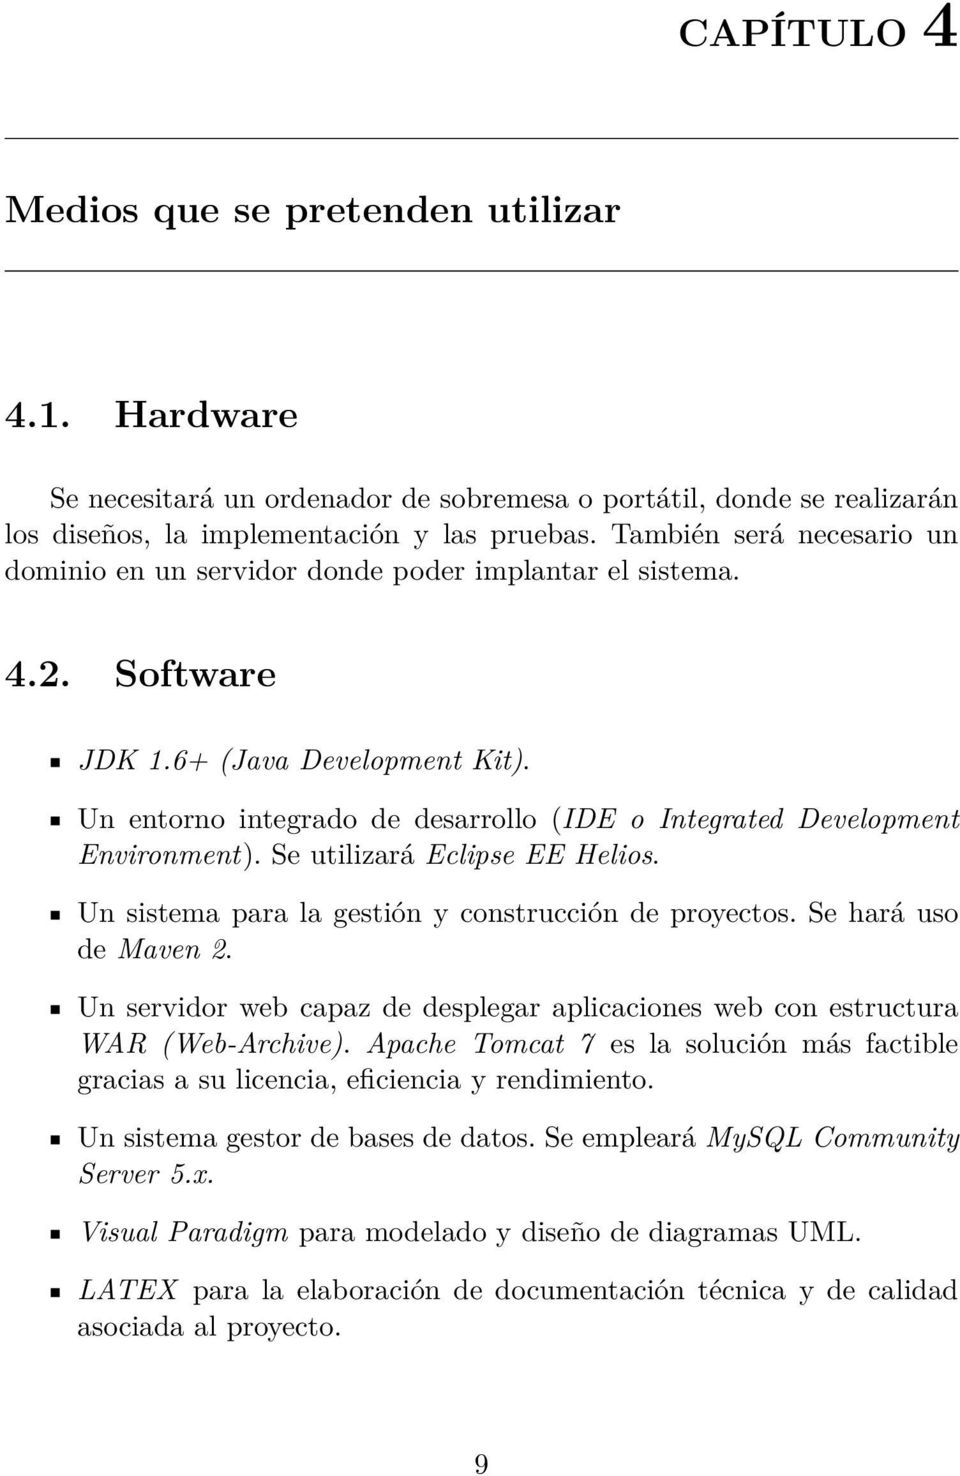 Un entorno integrado de desarrollo (IDE o Integrated Development Environment). Se utilizará Eclipse EE Helios. Un sistema para la gestión y construcción de proyectos. Se hará uso de Maven 2.